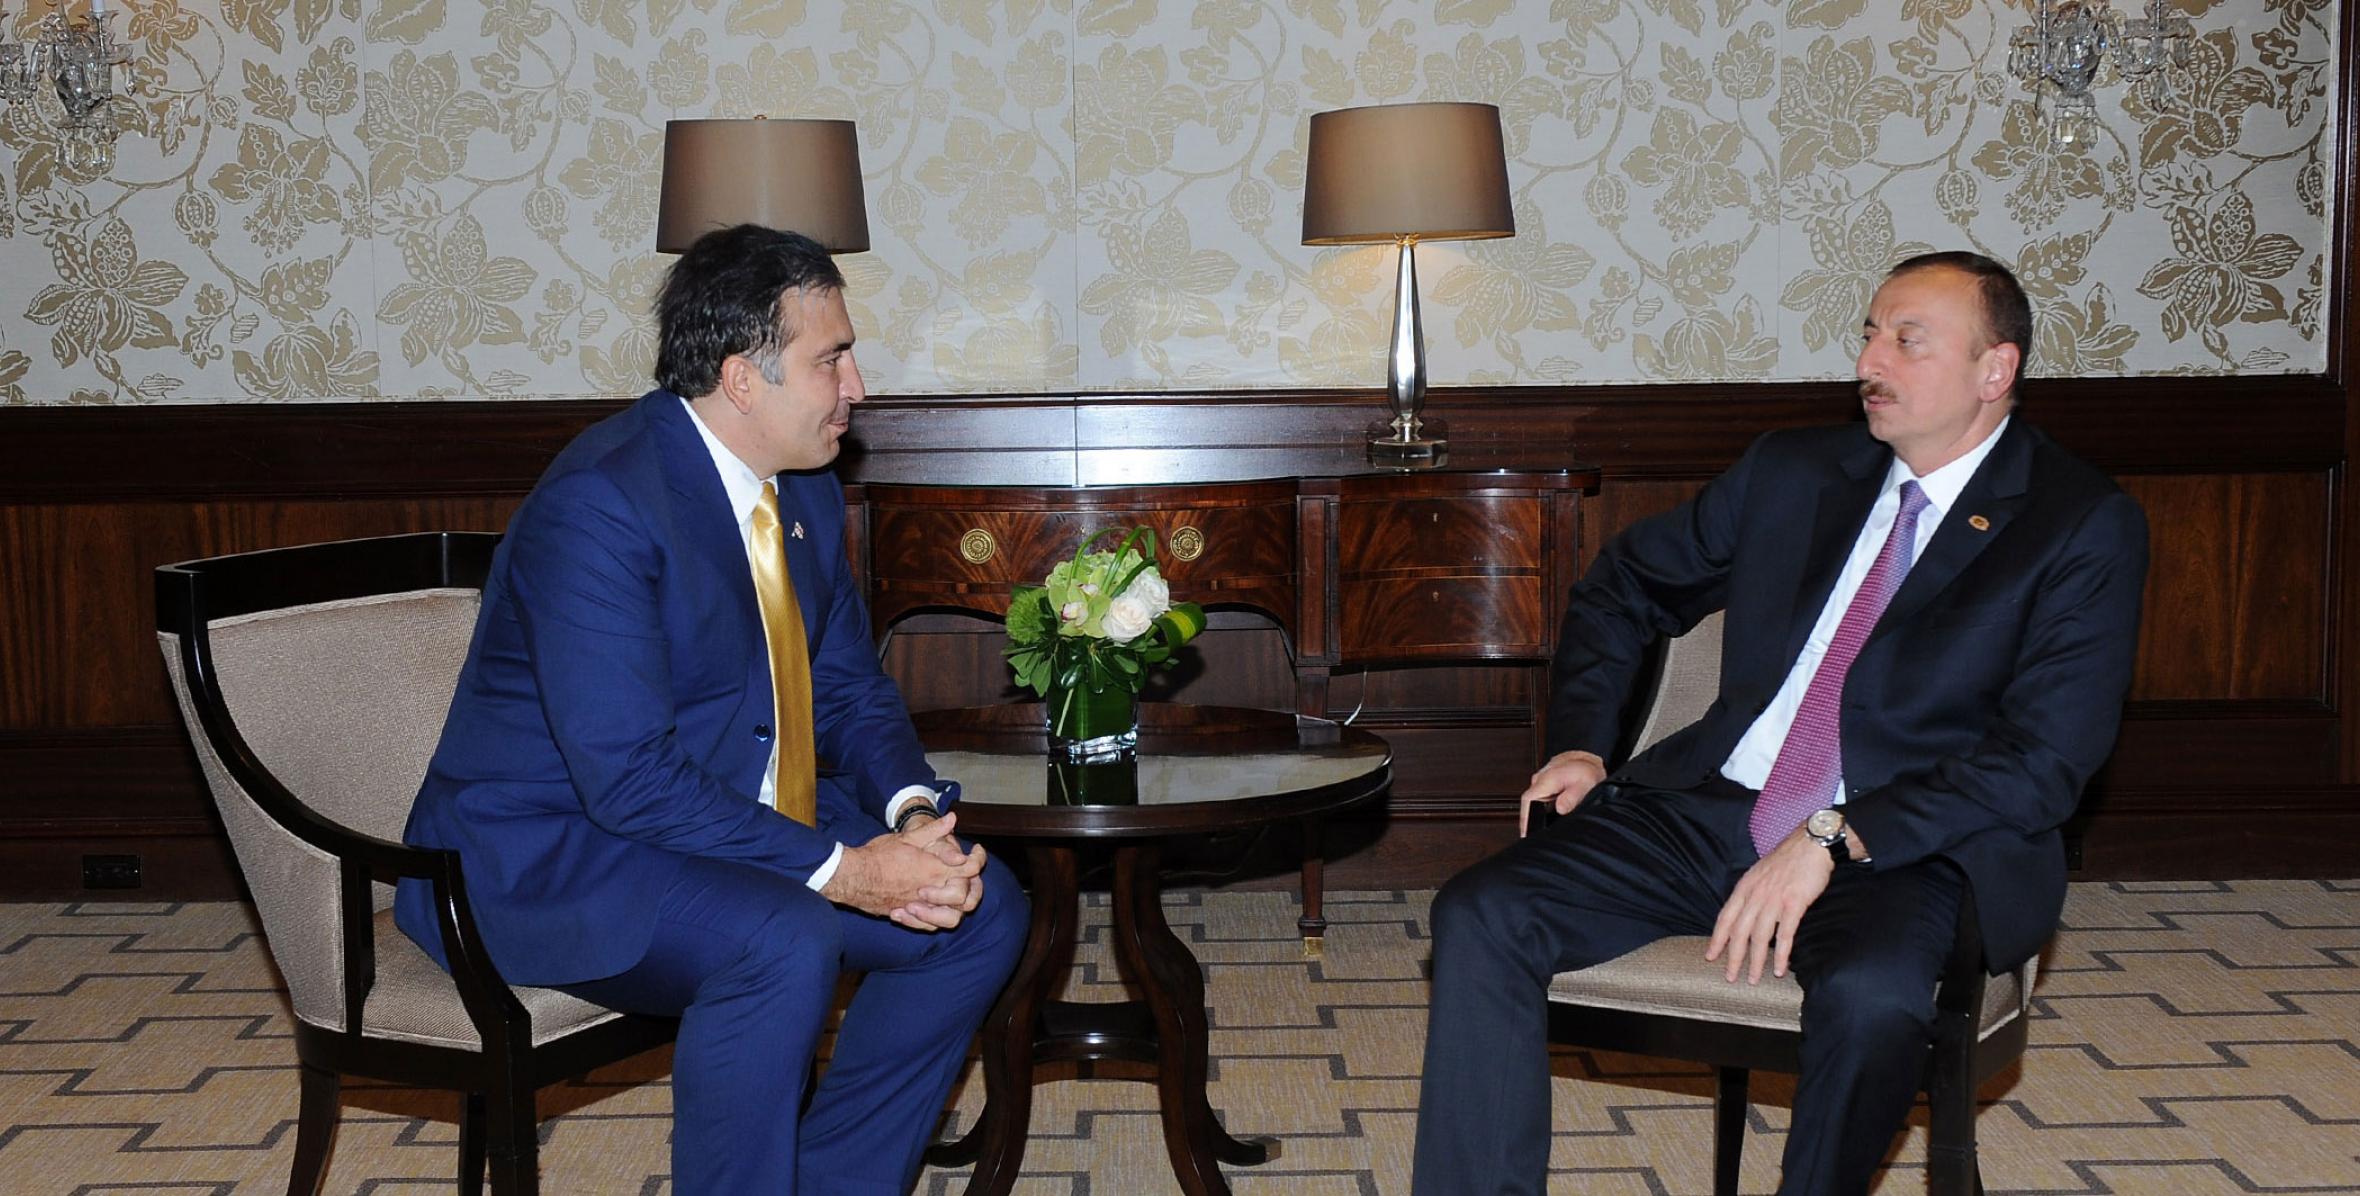 Ilham Aliyev met with President of Georgia Mikheil Saakashvili